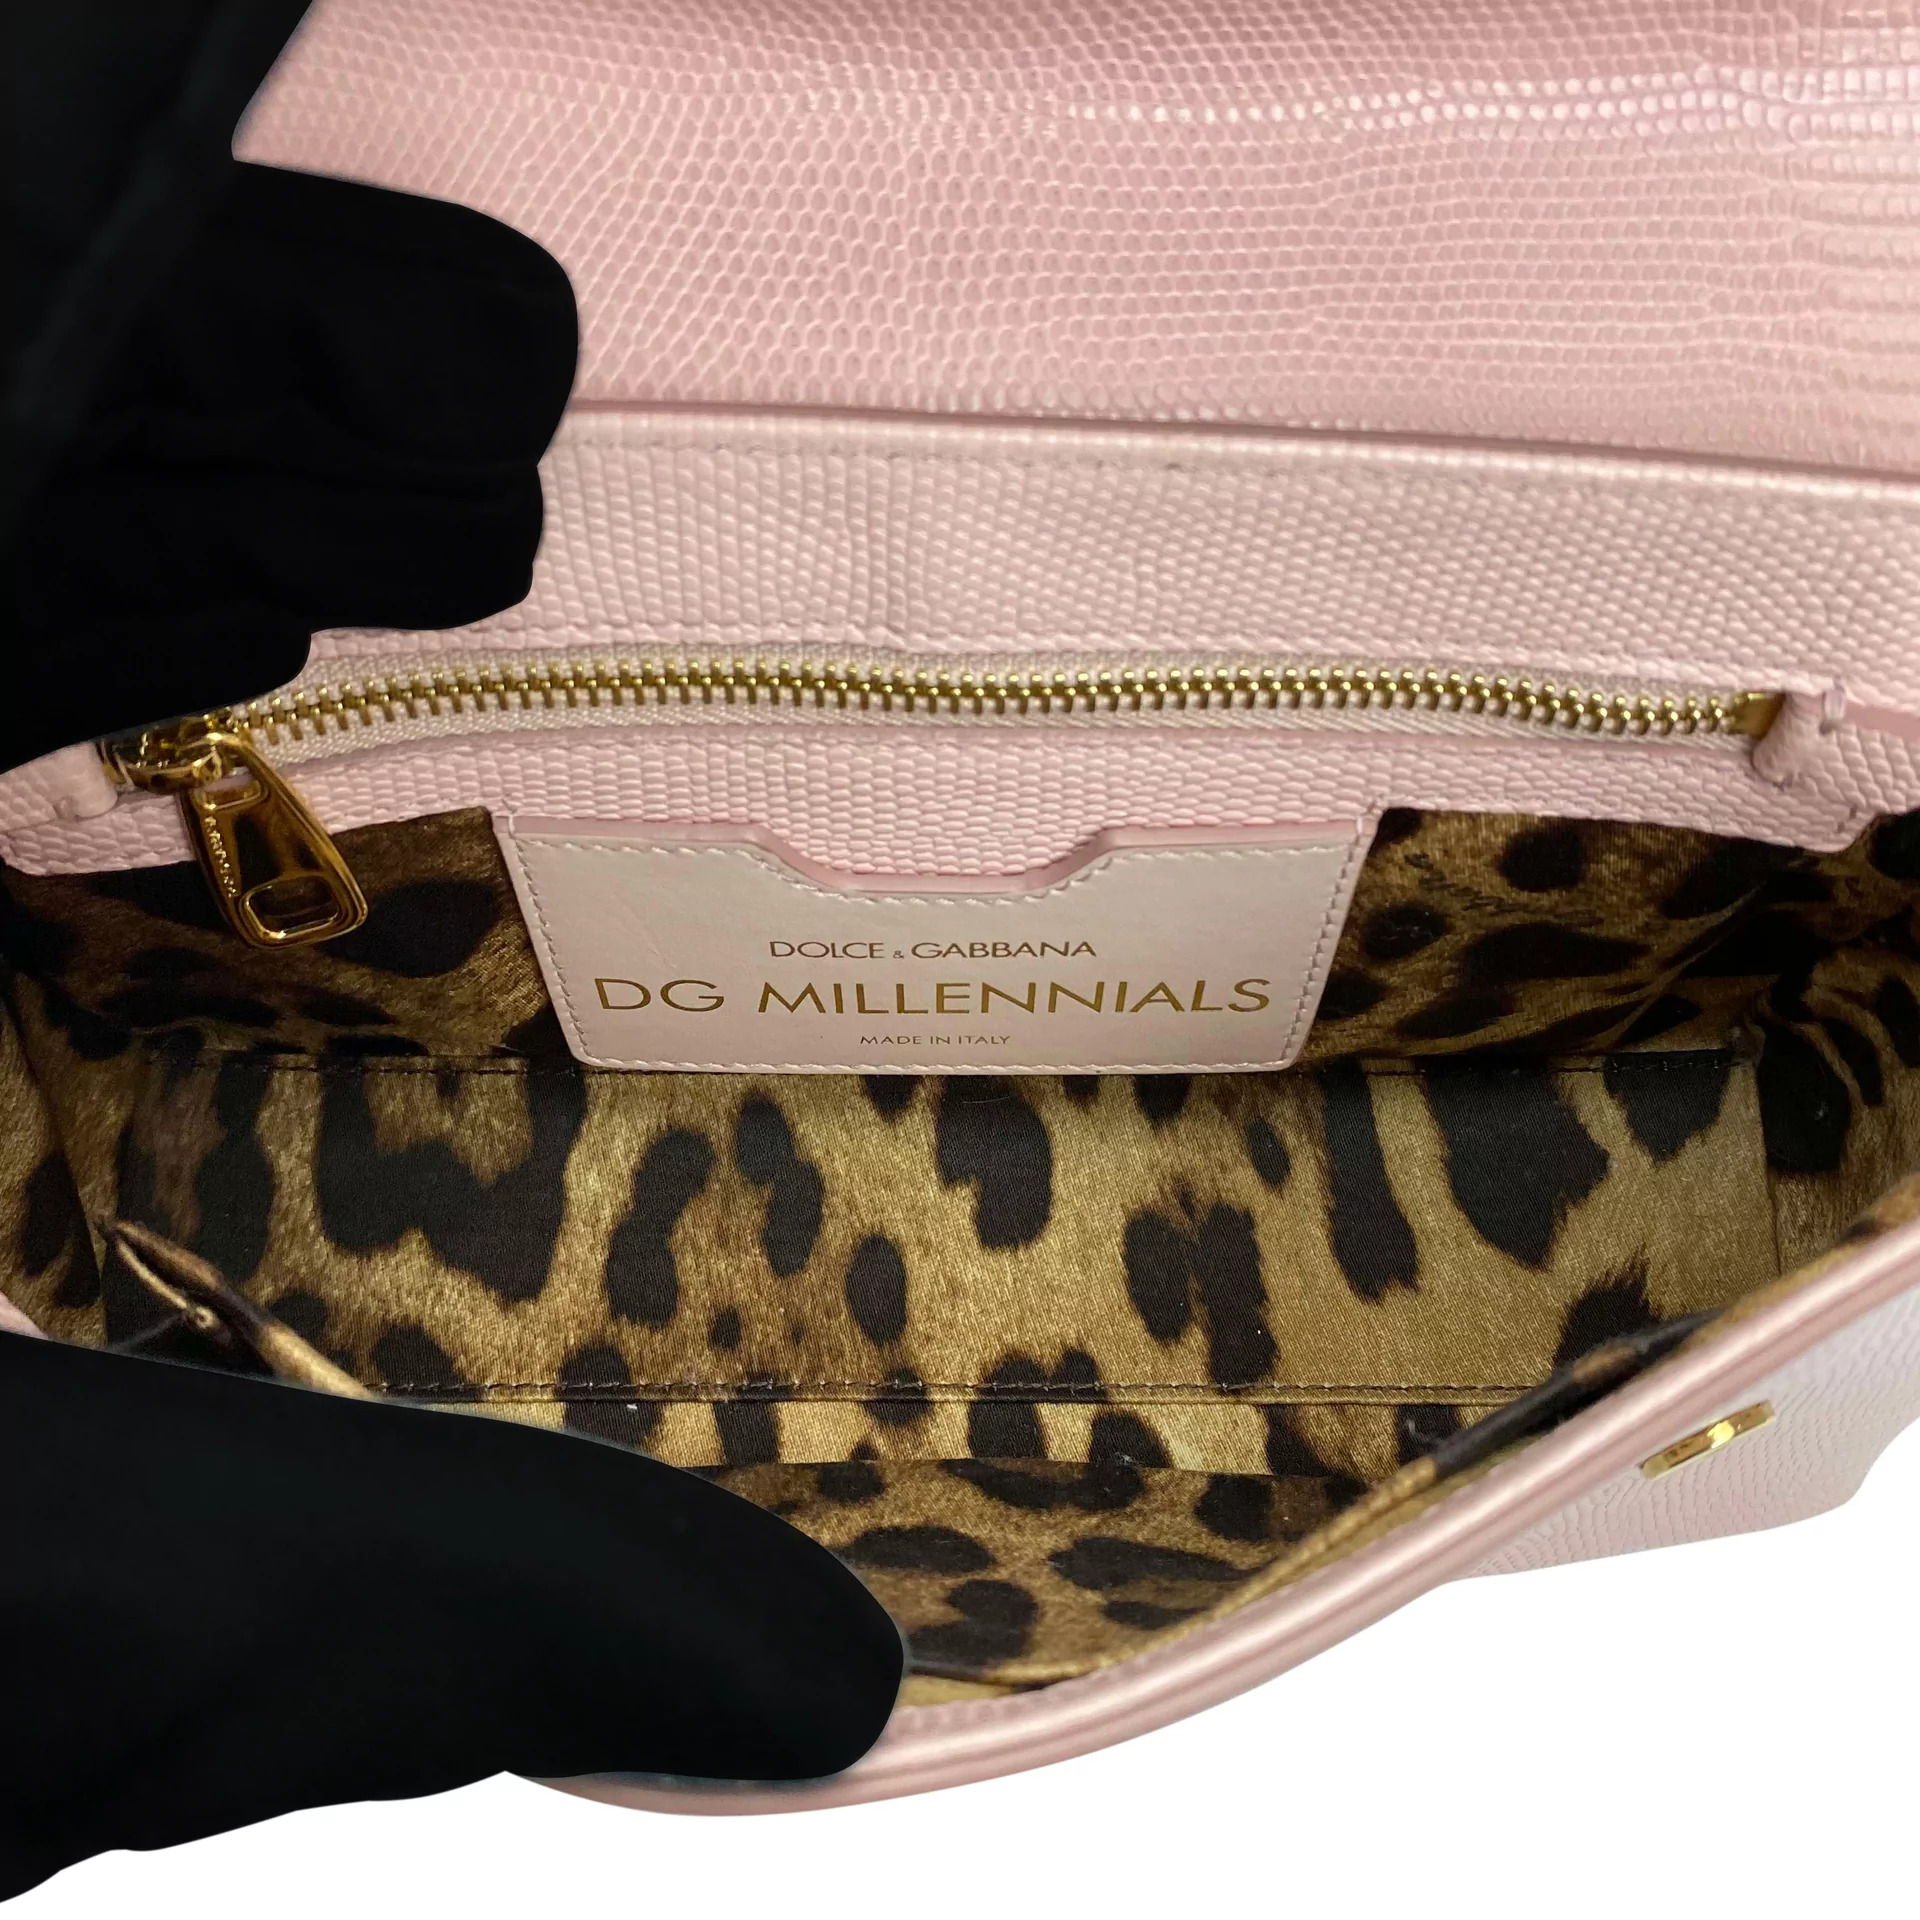 Bolsa Dolce & Gabbana D&G Millennials Rosa